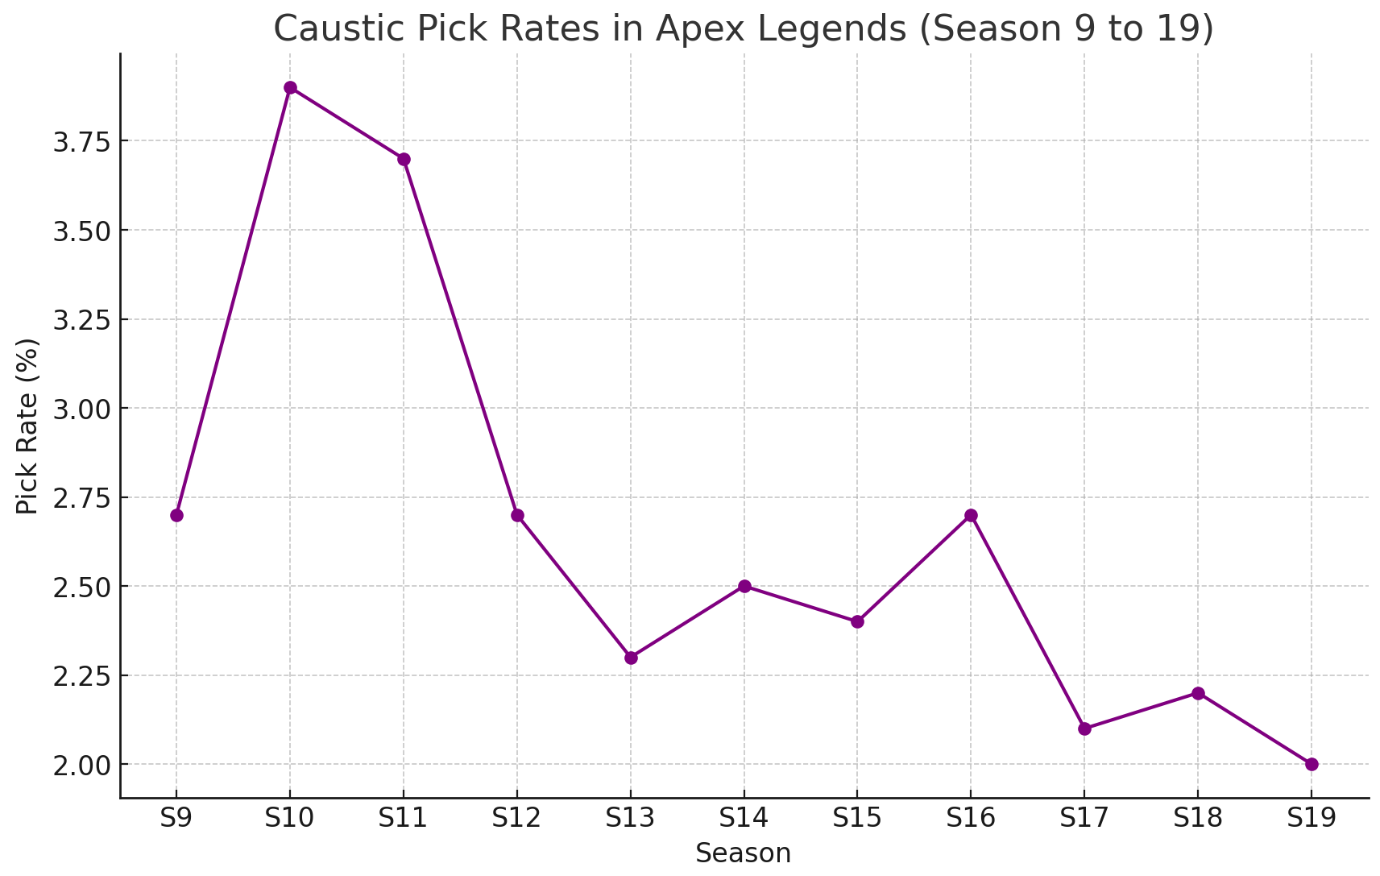 Caustic-pick-rates-in-Apex-Legends